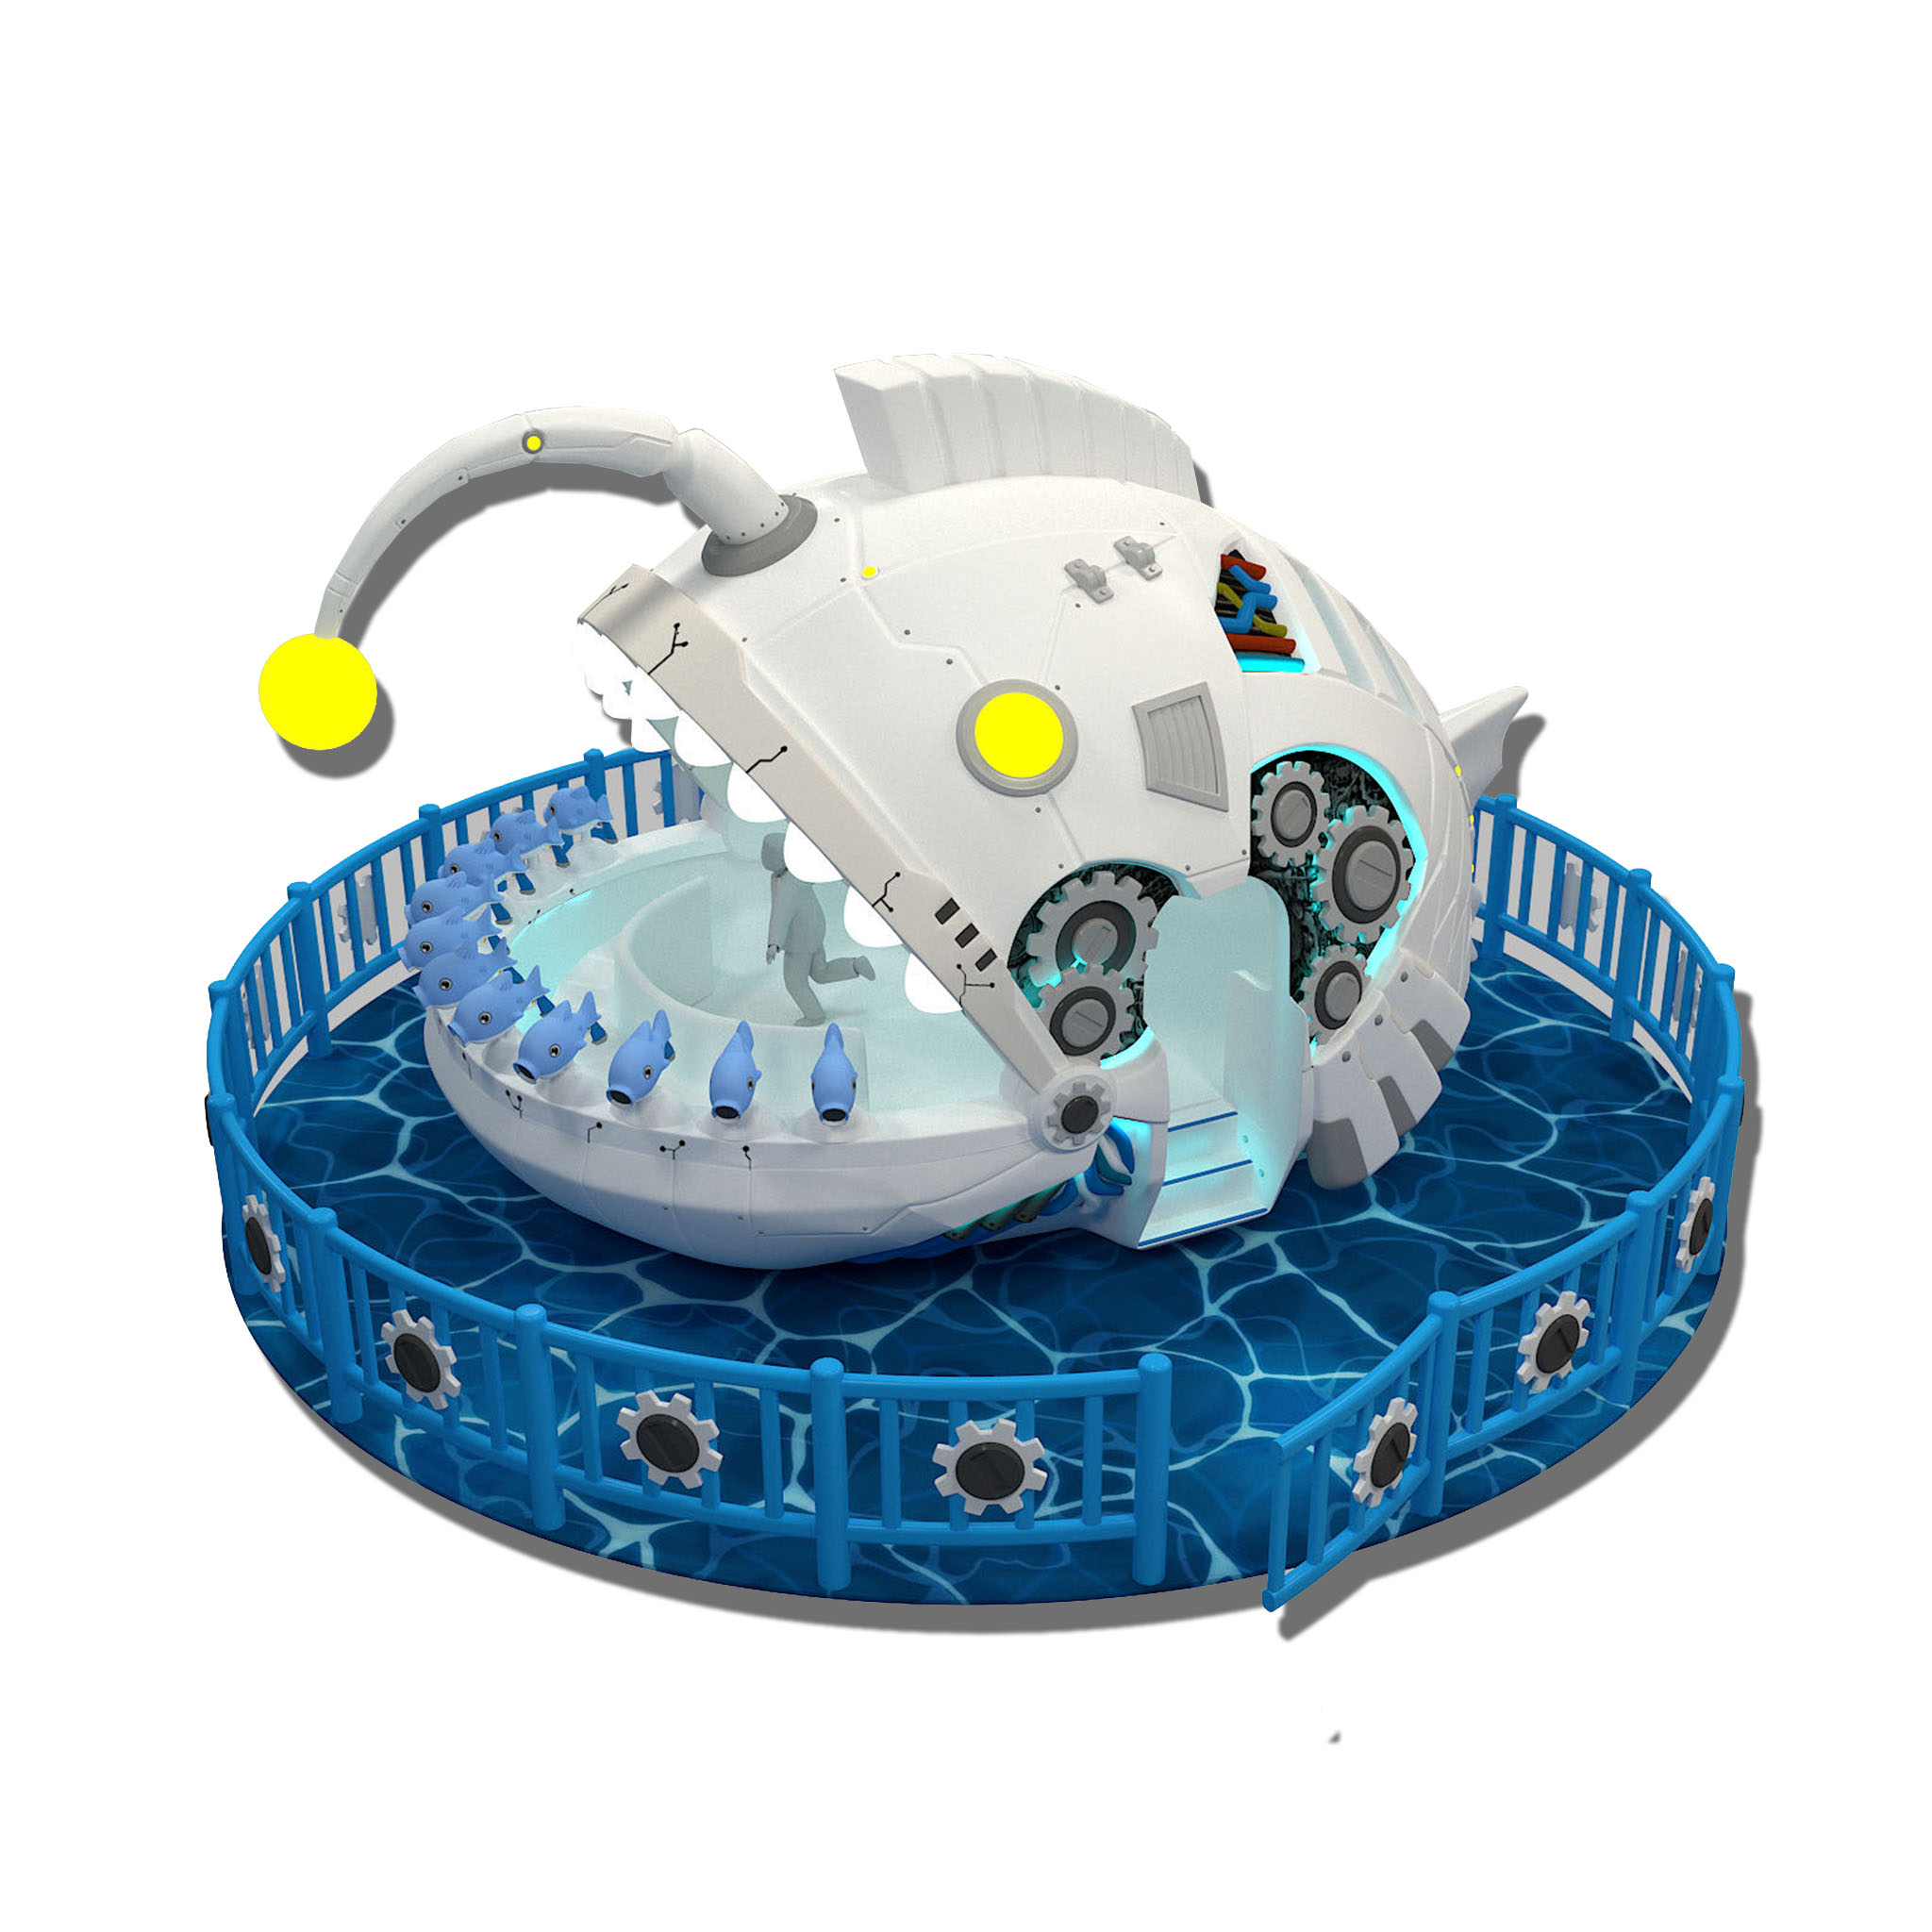 互动小鱼泡泡 哈尔滨正规小鱼泡泡游乐设备产品定制 3